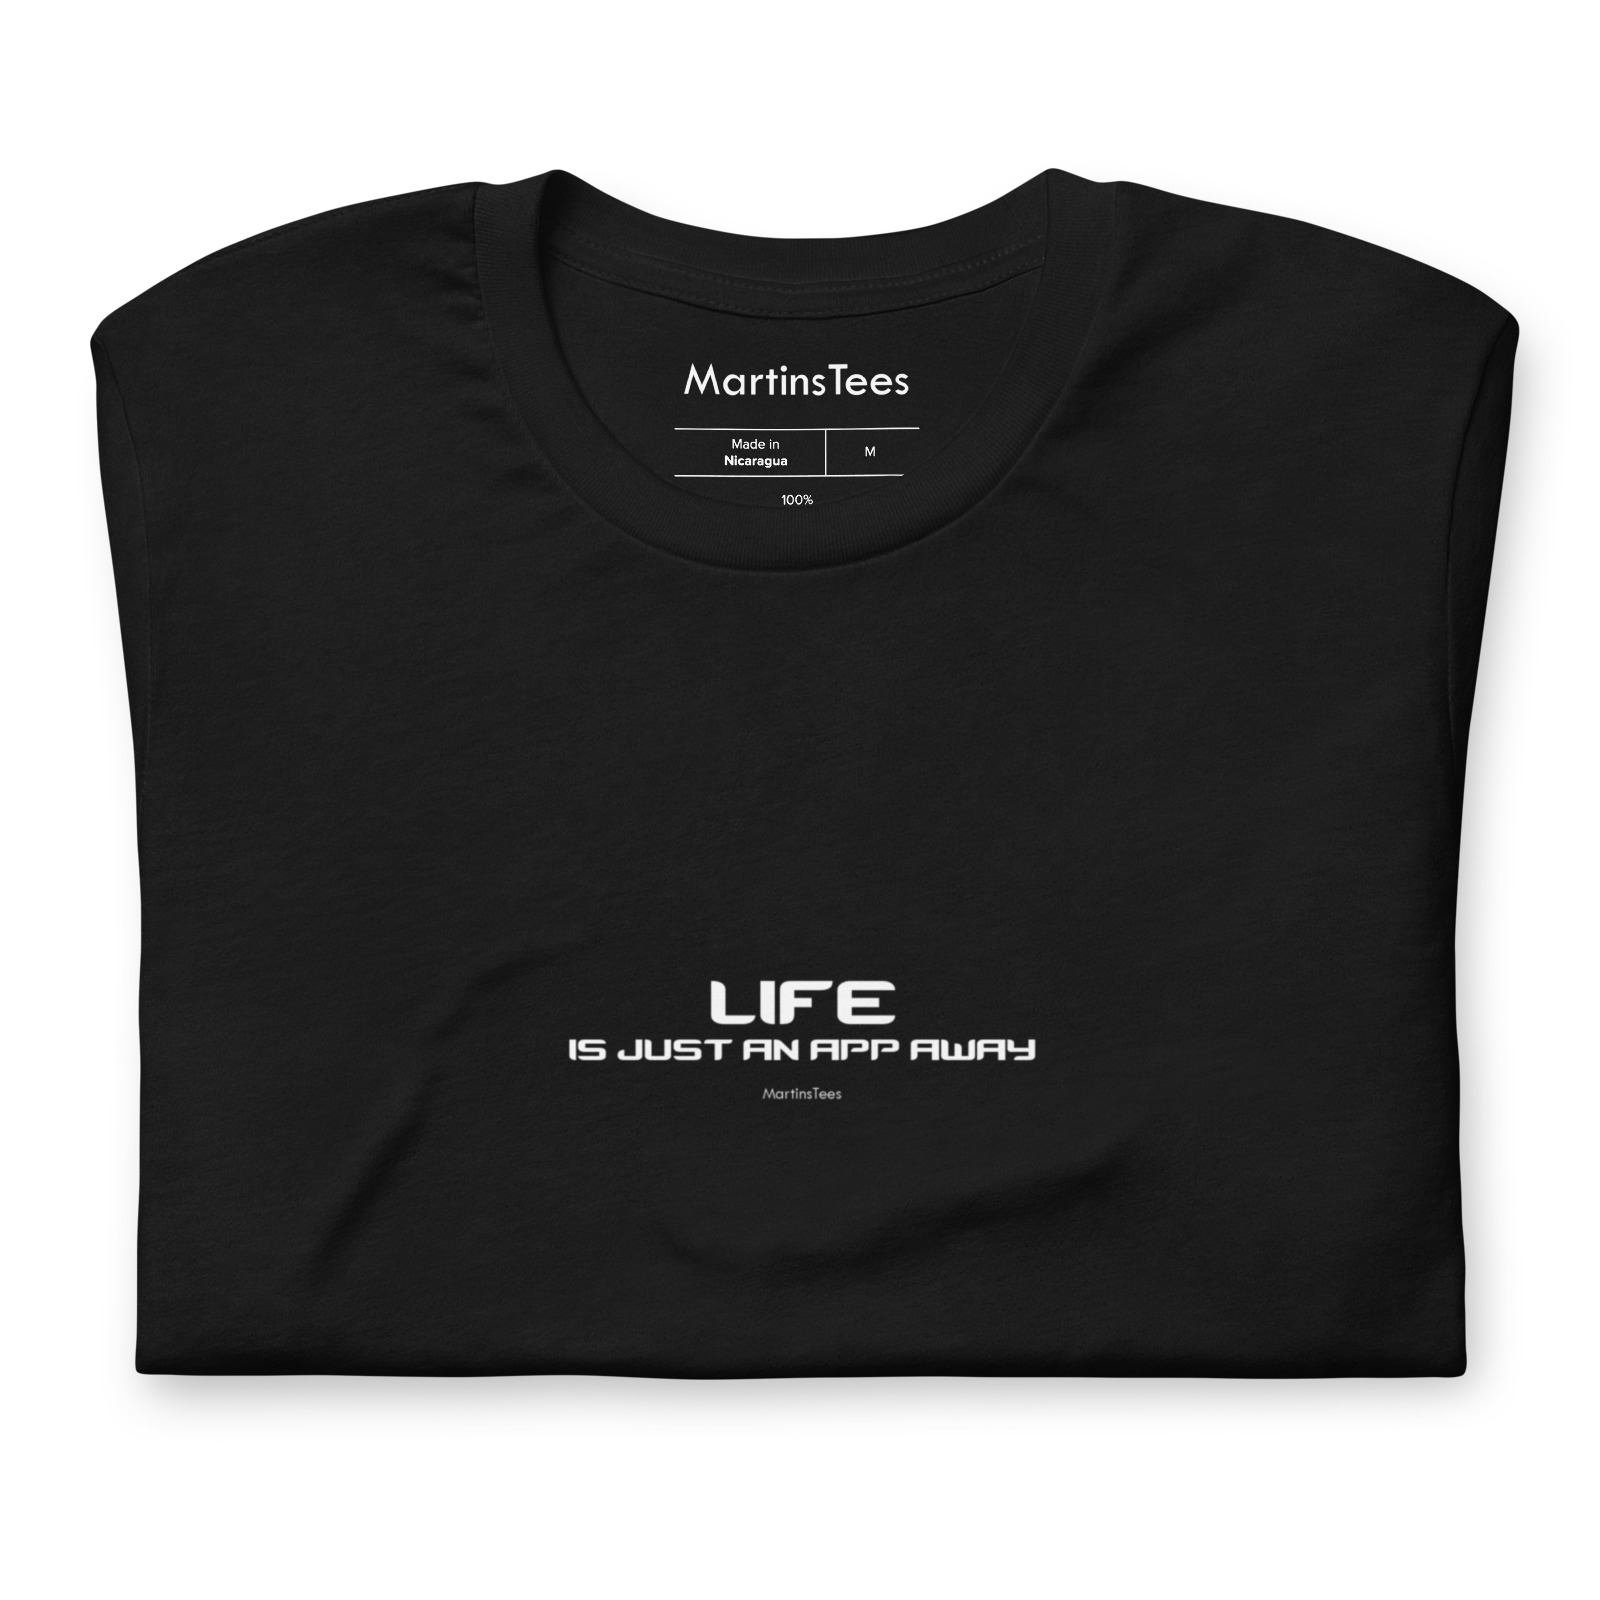 T-shirt: LIFE - IS JUST AN APP AWAY